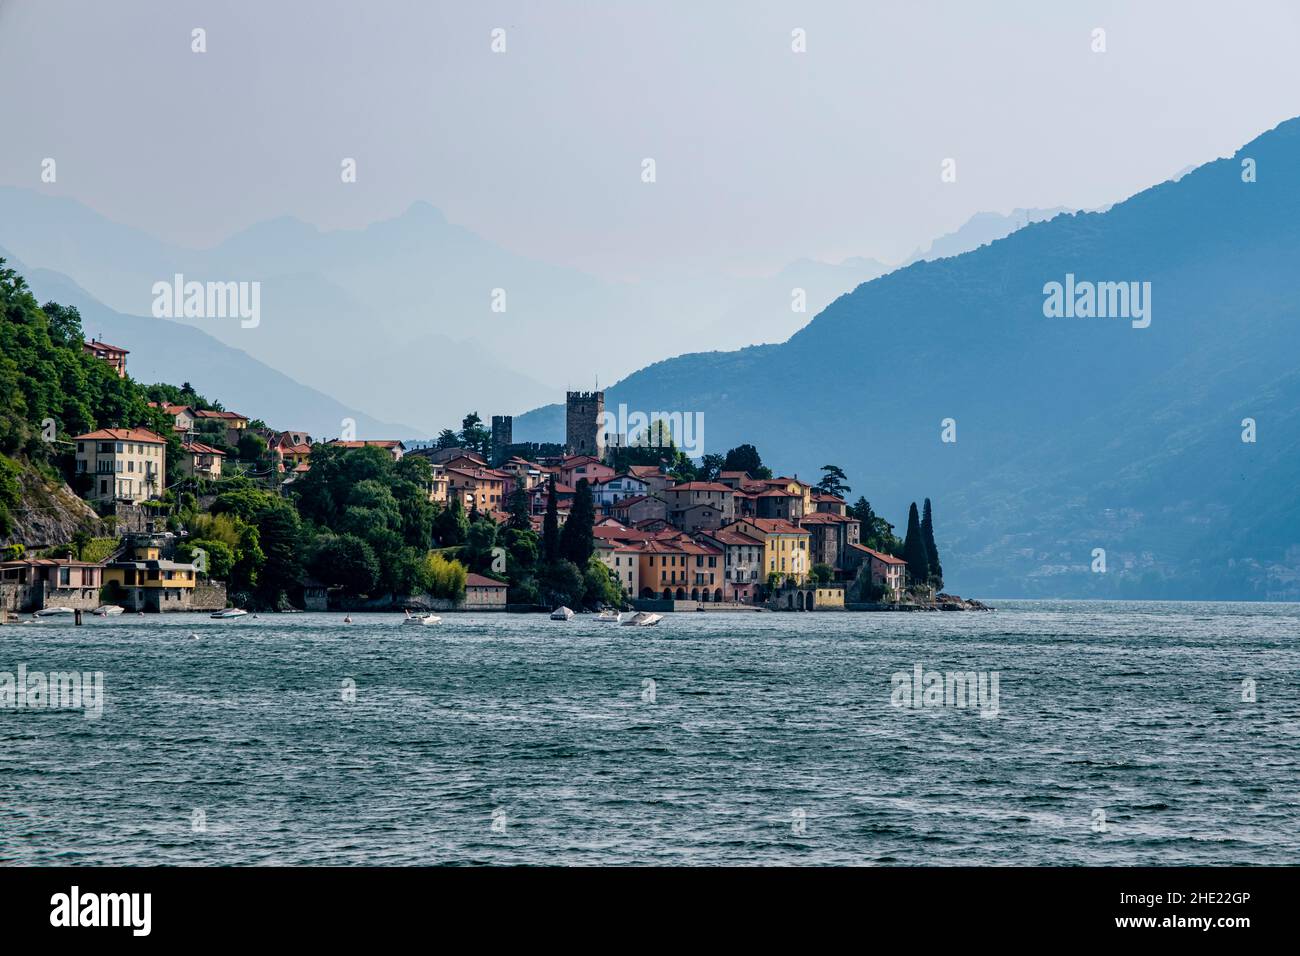 Blick auf den See der Stadt, einschließlich des Castello di Rezzonico, über den Comer See von einer Fähre. Stockfoto